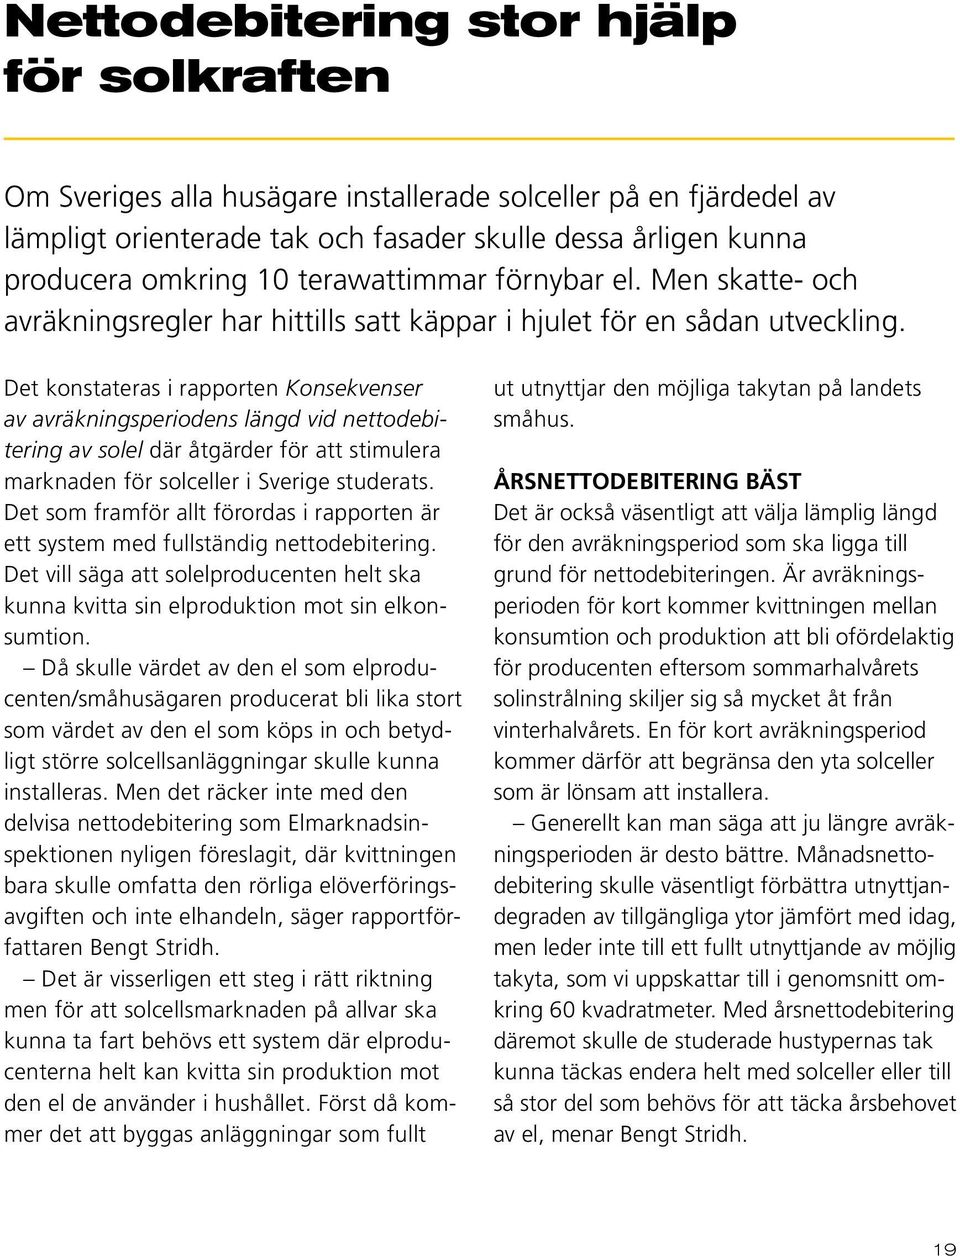 Det konstateras i rapporten Konsekvenser av avräkningsperiodens längd vid nettodebitering av solel där åtgärder för att stimulera marknaden för solceller i Sverige studerats.